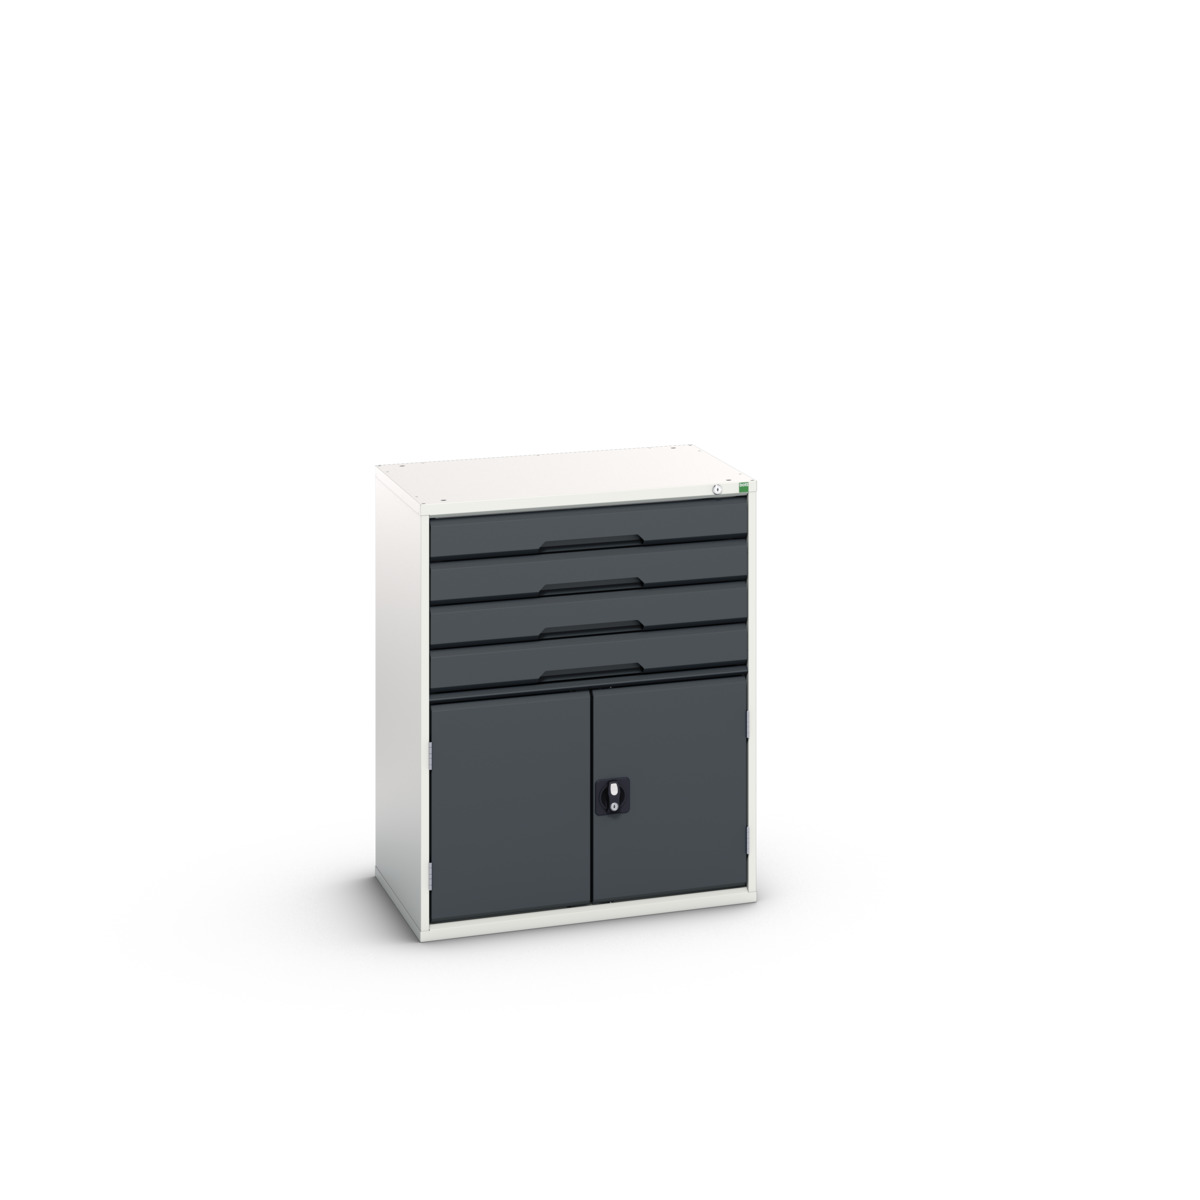 16925165.19 - verso drawer-door cabinet